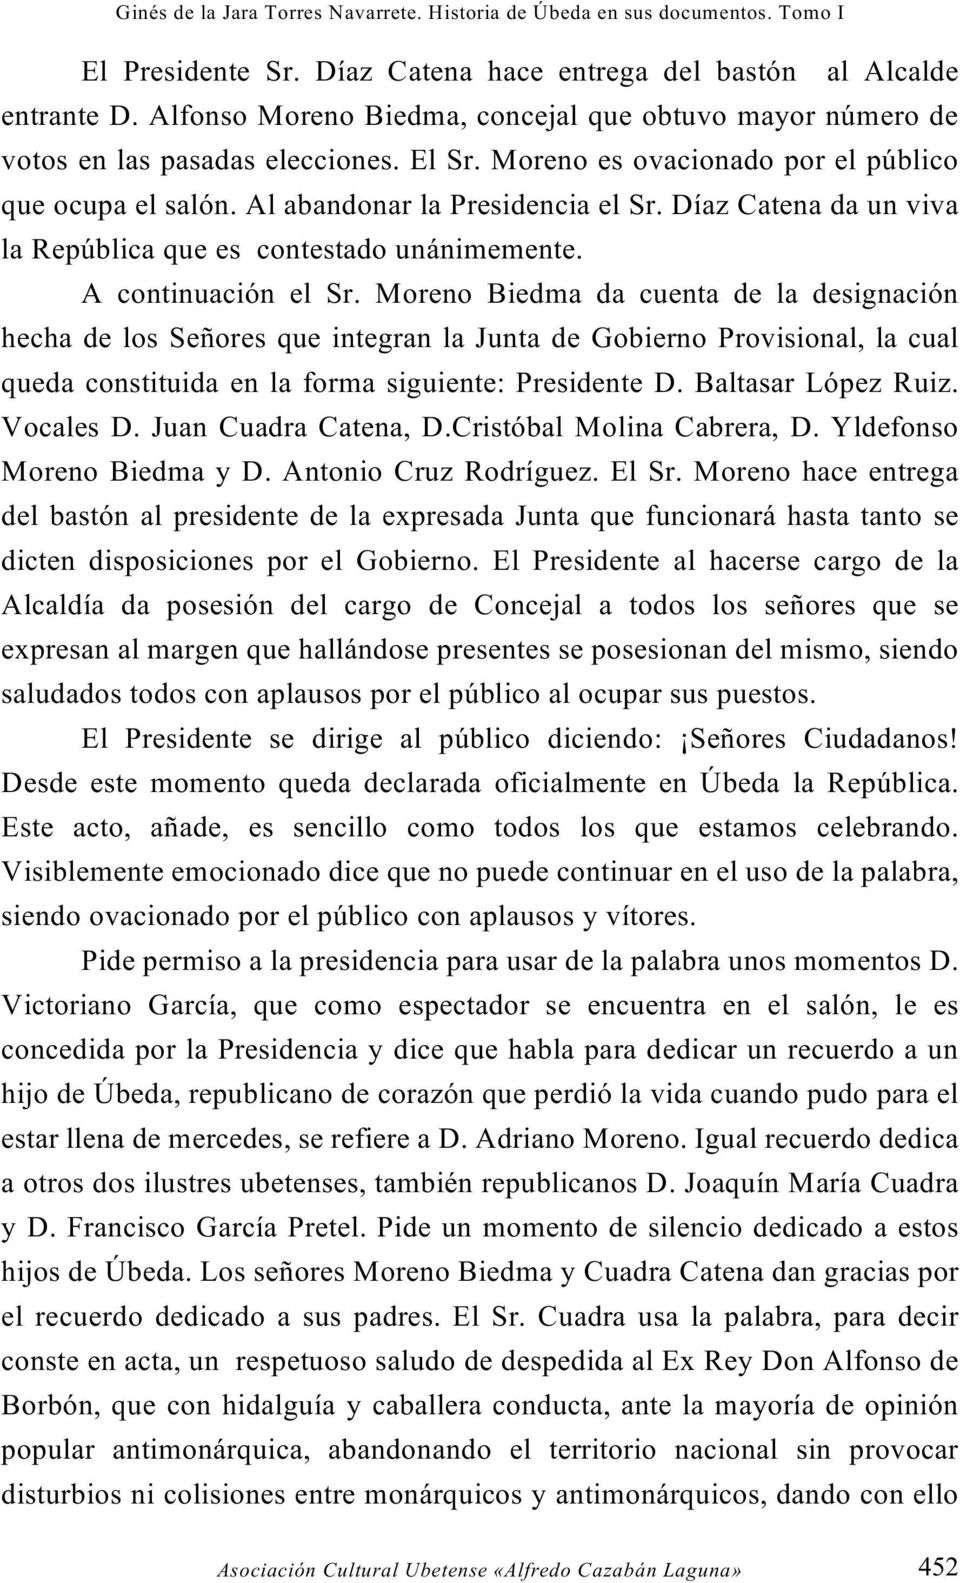 Moreno Biedma da cuenta de la designación hecha de los Señores que integran la Junta de Gobierno Provisional, la cual queda constituida en la forma siguiente: Presidente D. Baltasar López Ruiz.